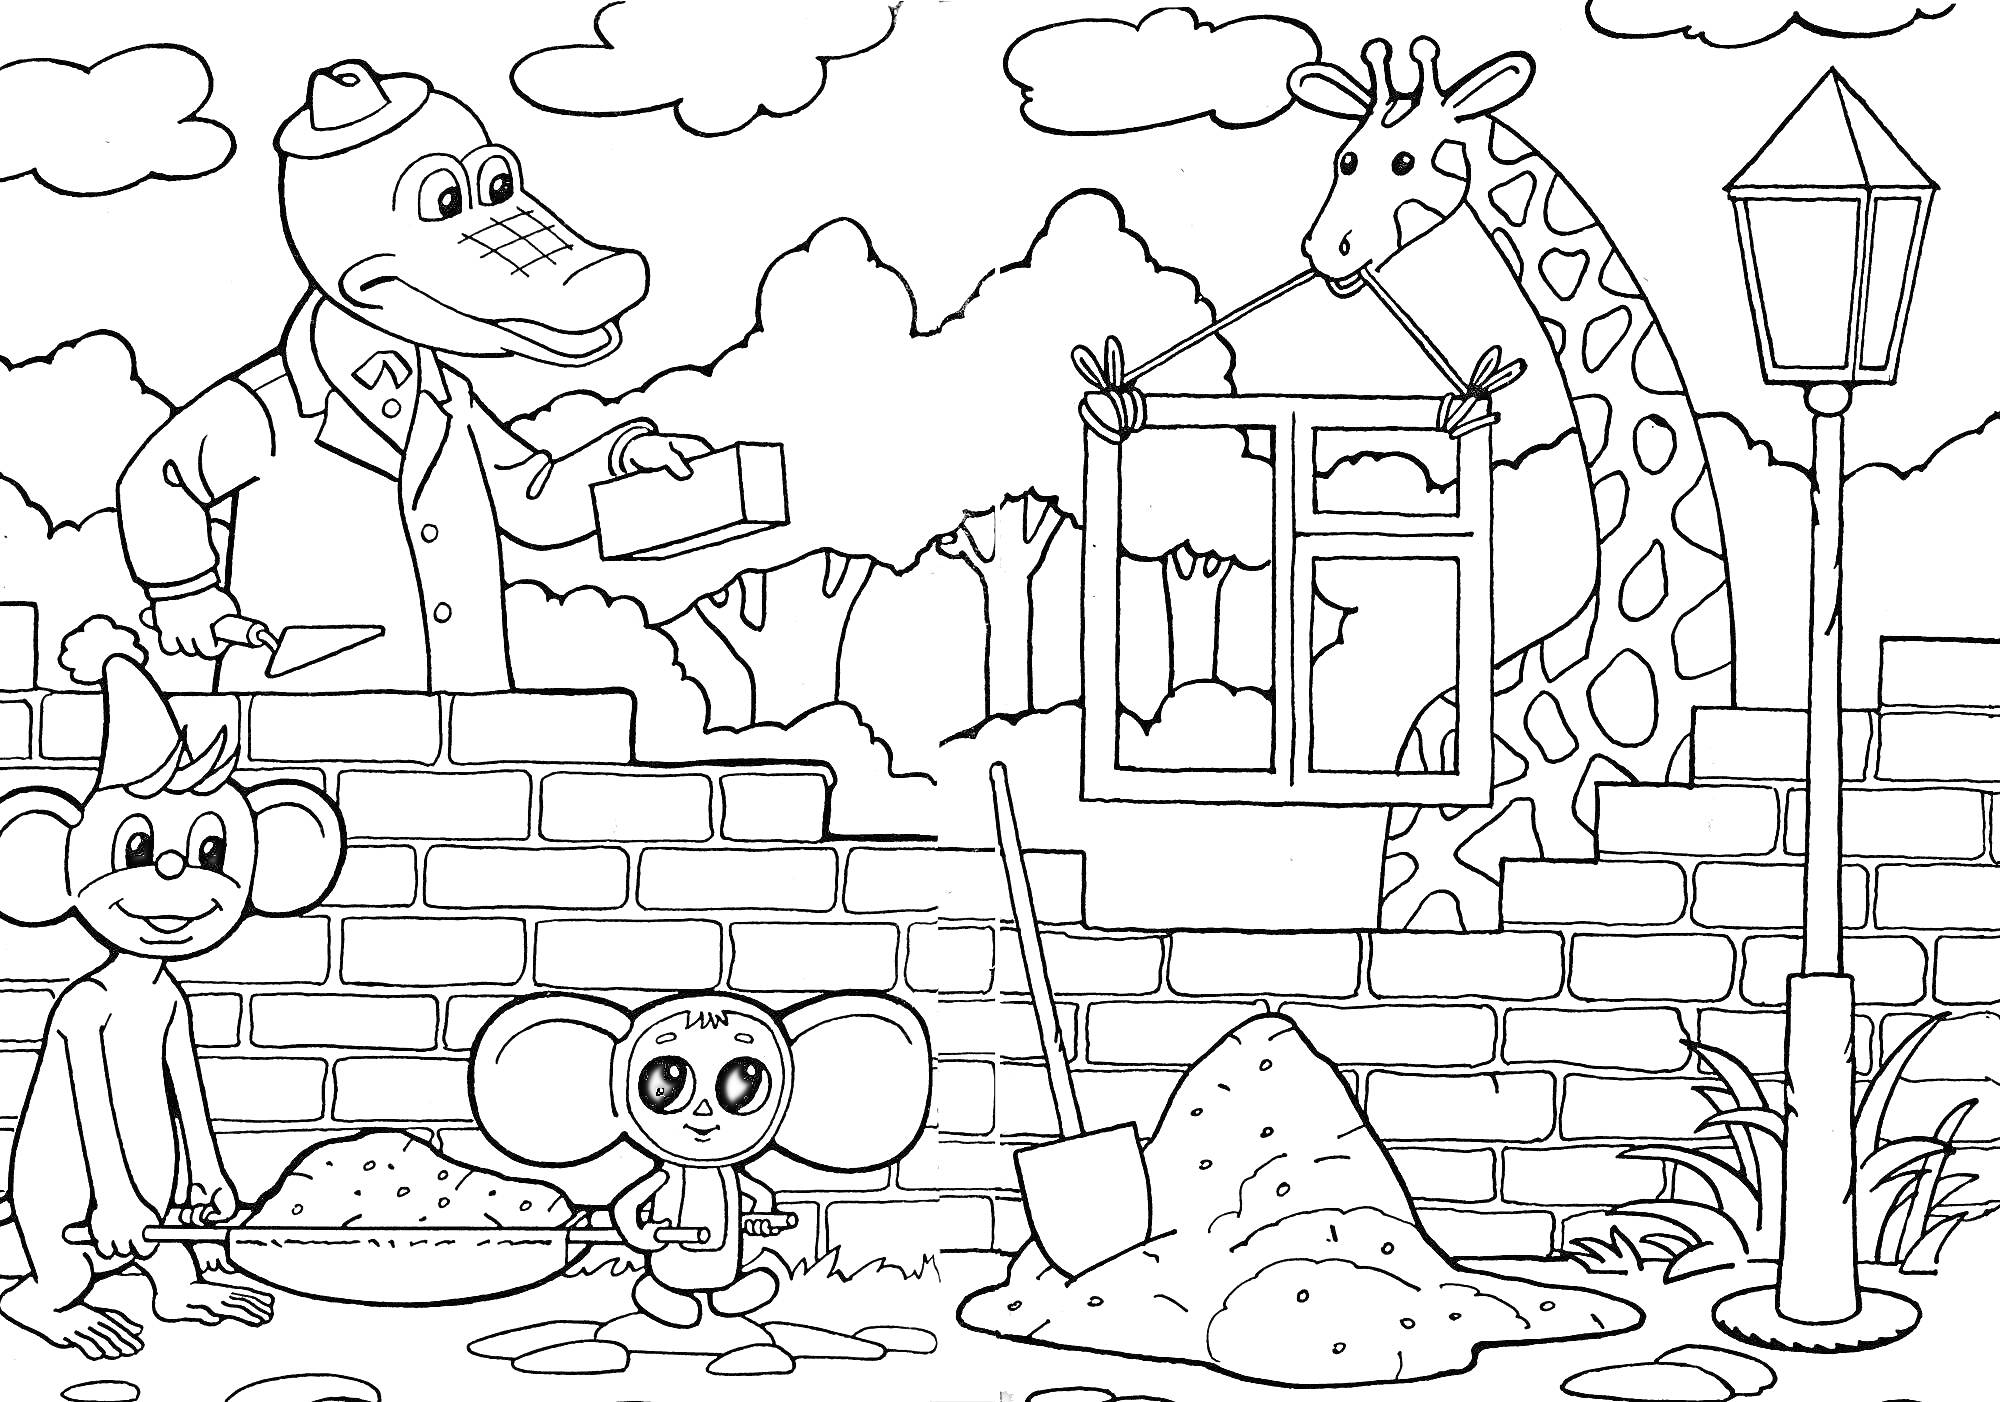 Раскраска Животные строят кирпичную стену: крокодил с мастерком, жираф с окном, два мышонка на фоне дерева и фонаря.